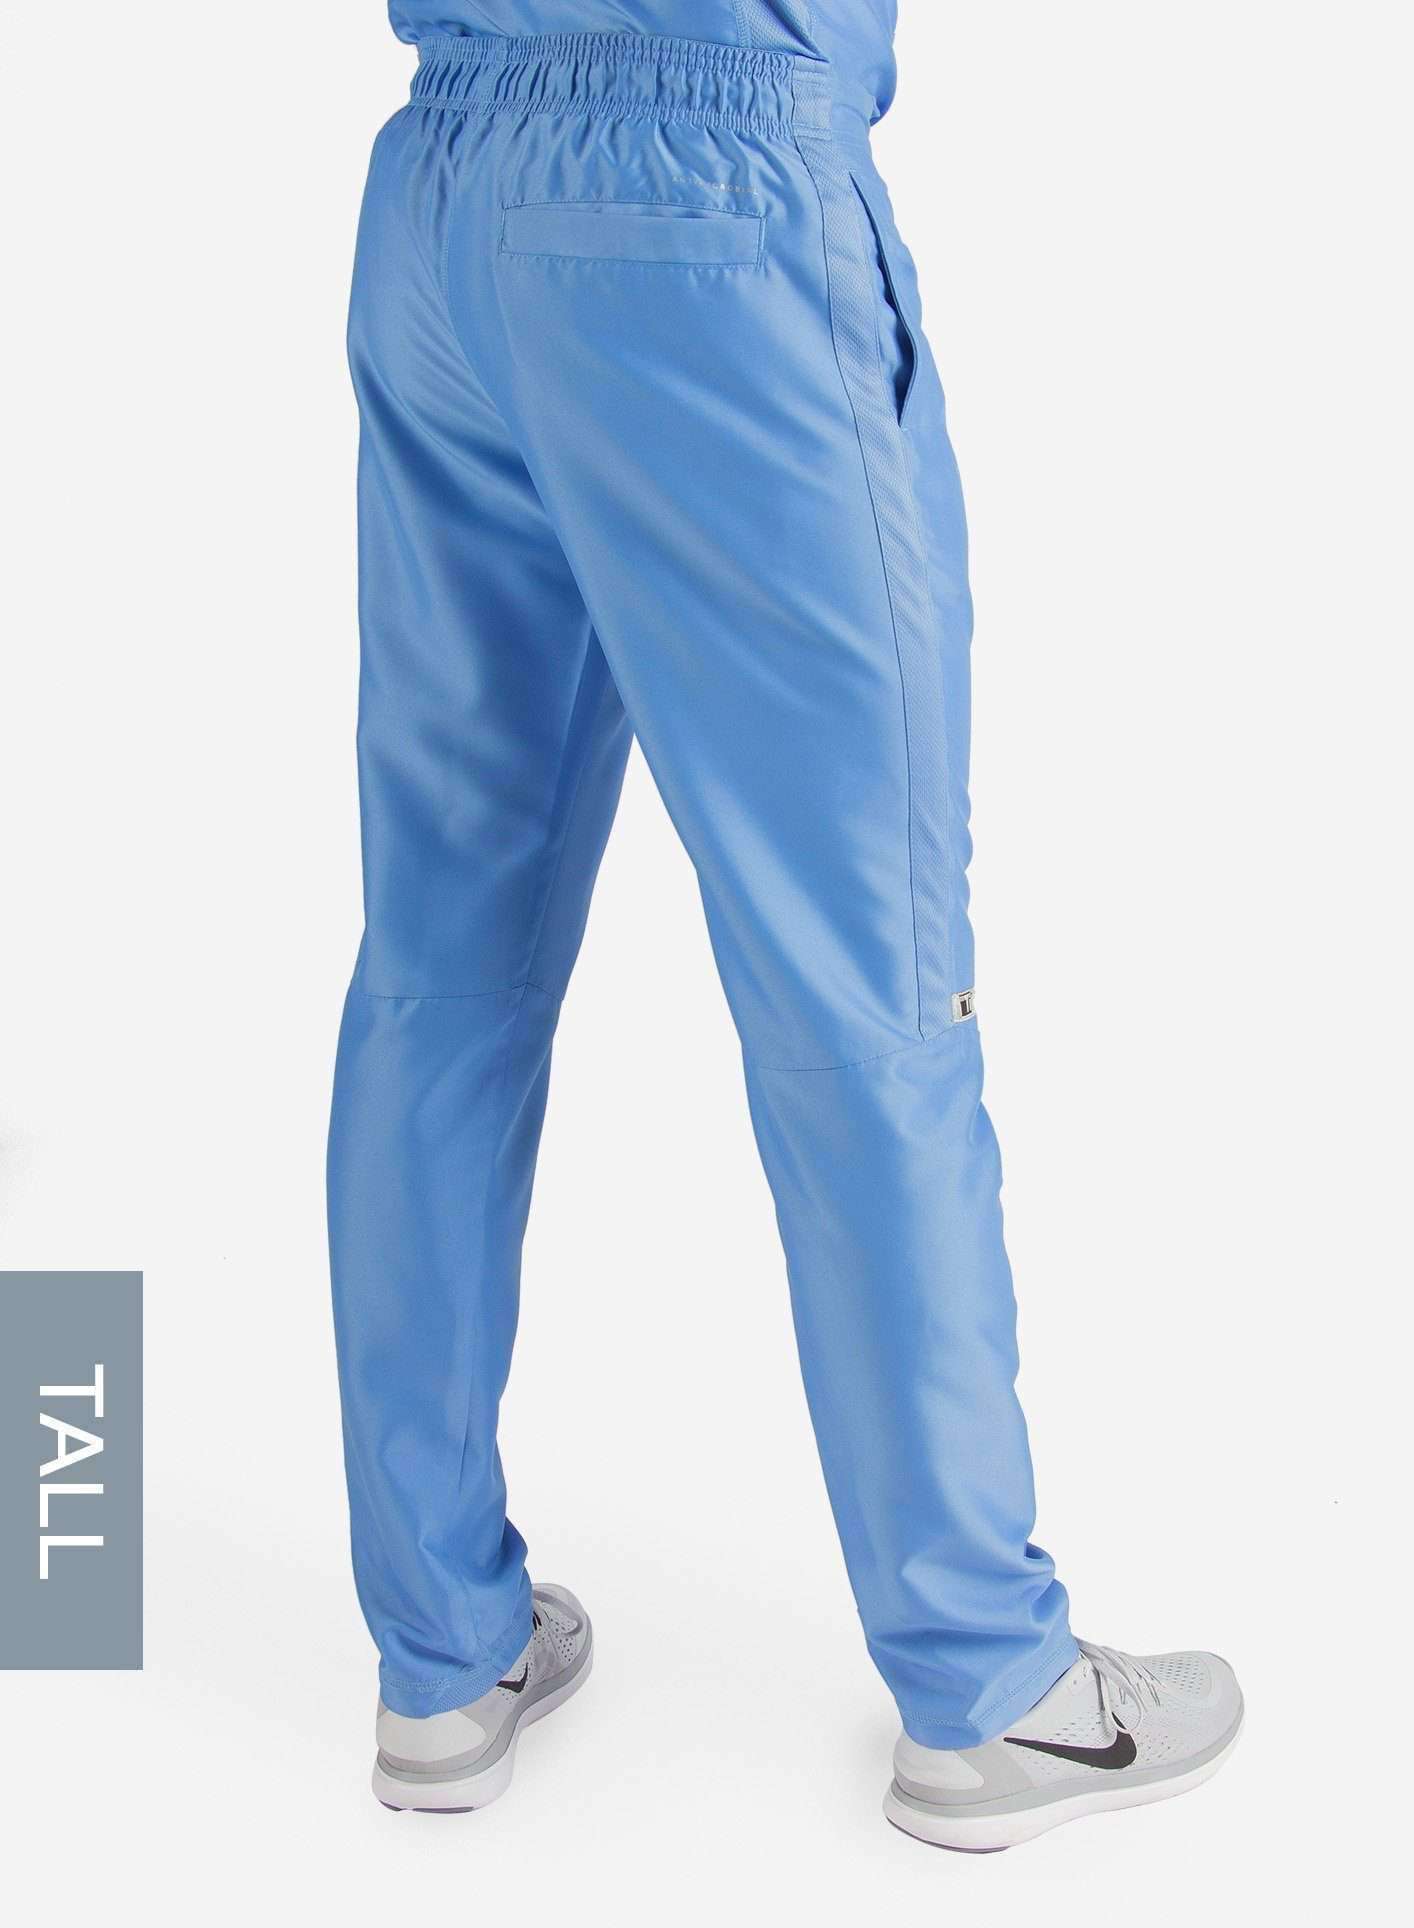 Small Tall 34 - Ceil Blue David Simple Scrub Pants